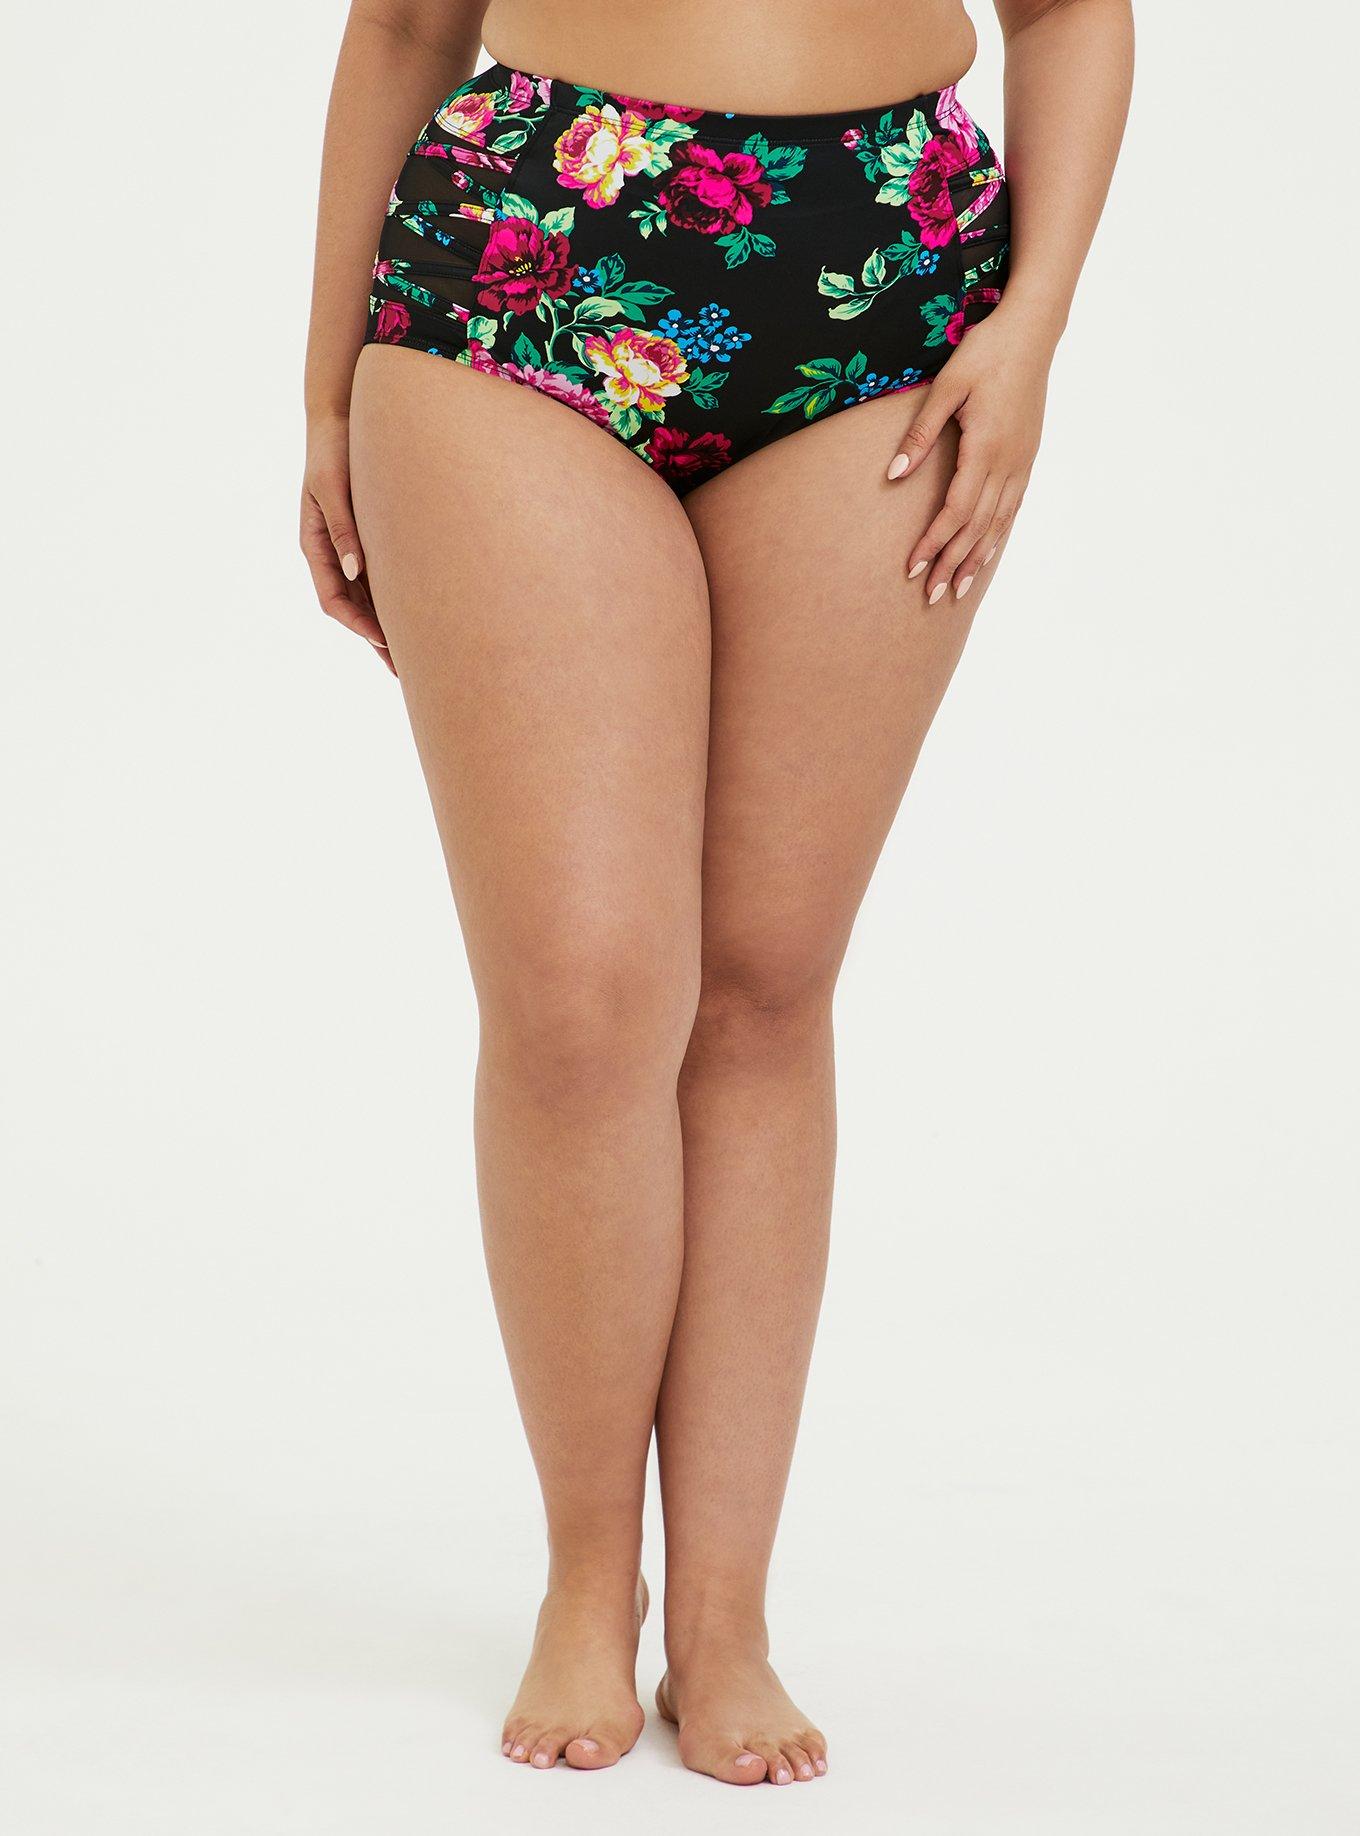 Plus Size - Black & Multi Fruit Lattice Push-Up Balconette Bikini